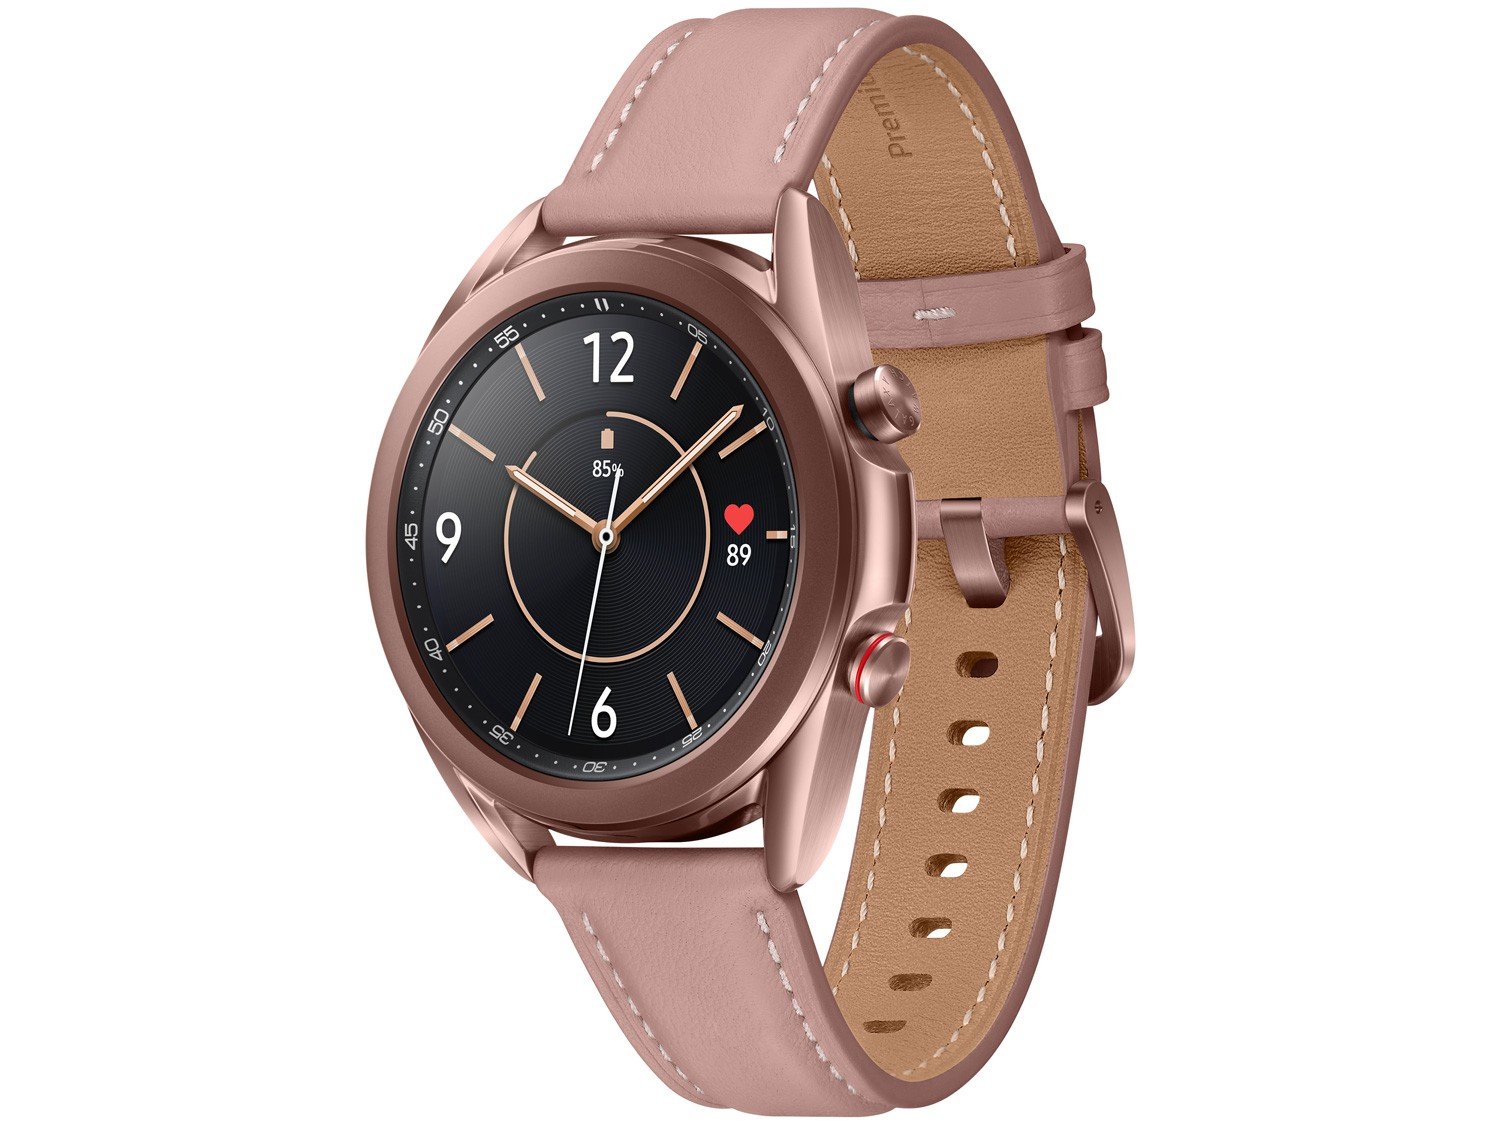 Smartwatch Samsung Galaxy Watch 3 LTE Bronze - Bivolt - 0